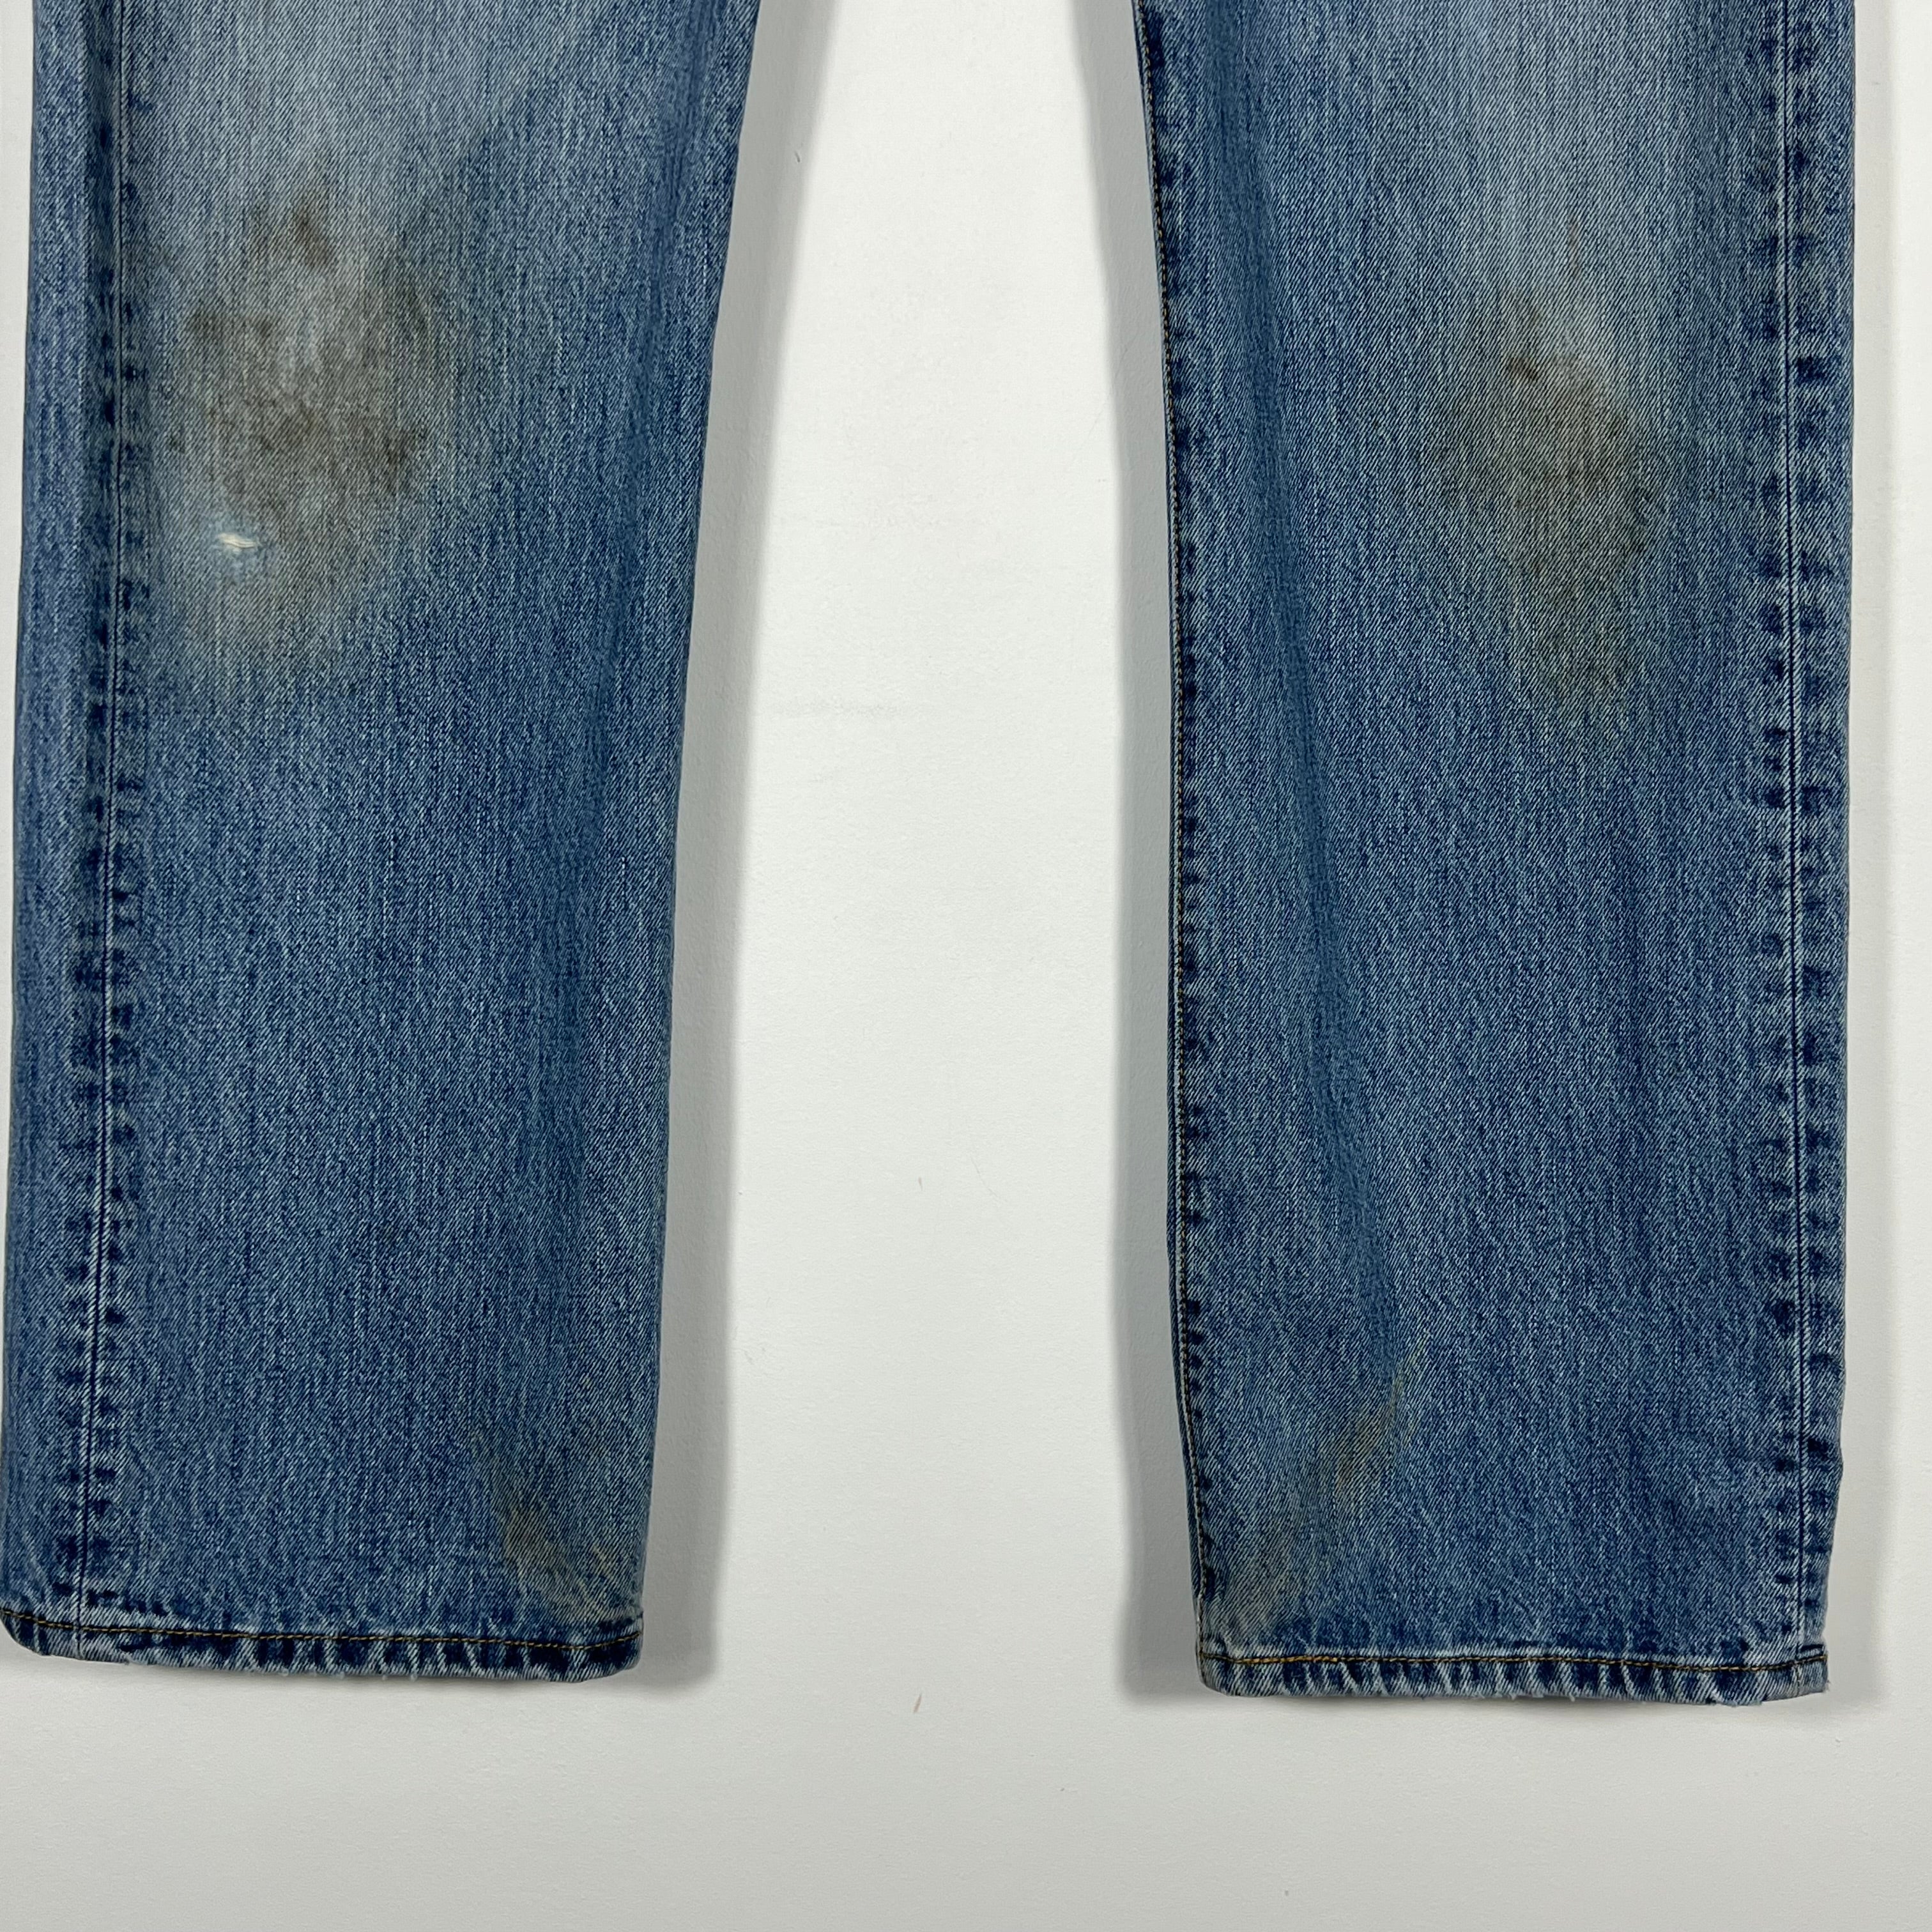 Vintage Levis 501 Jeans - Men's 36/32